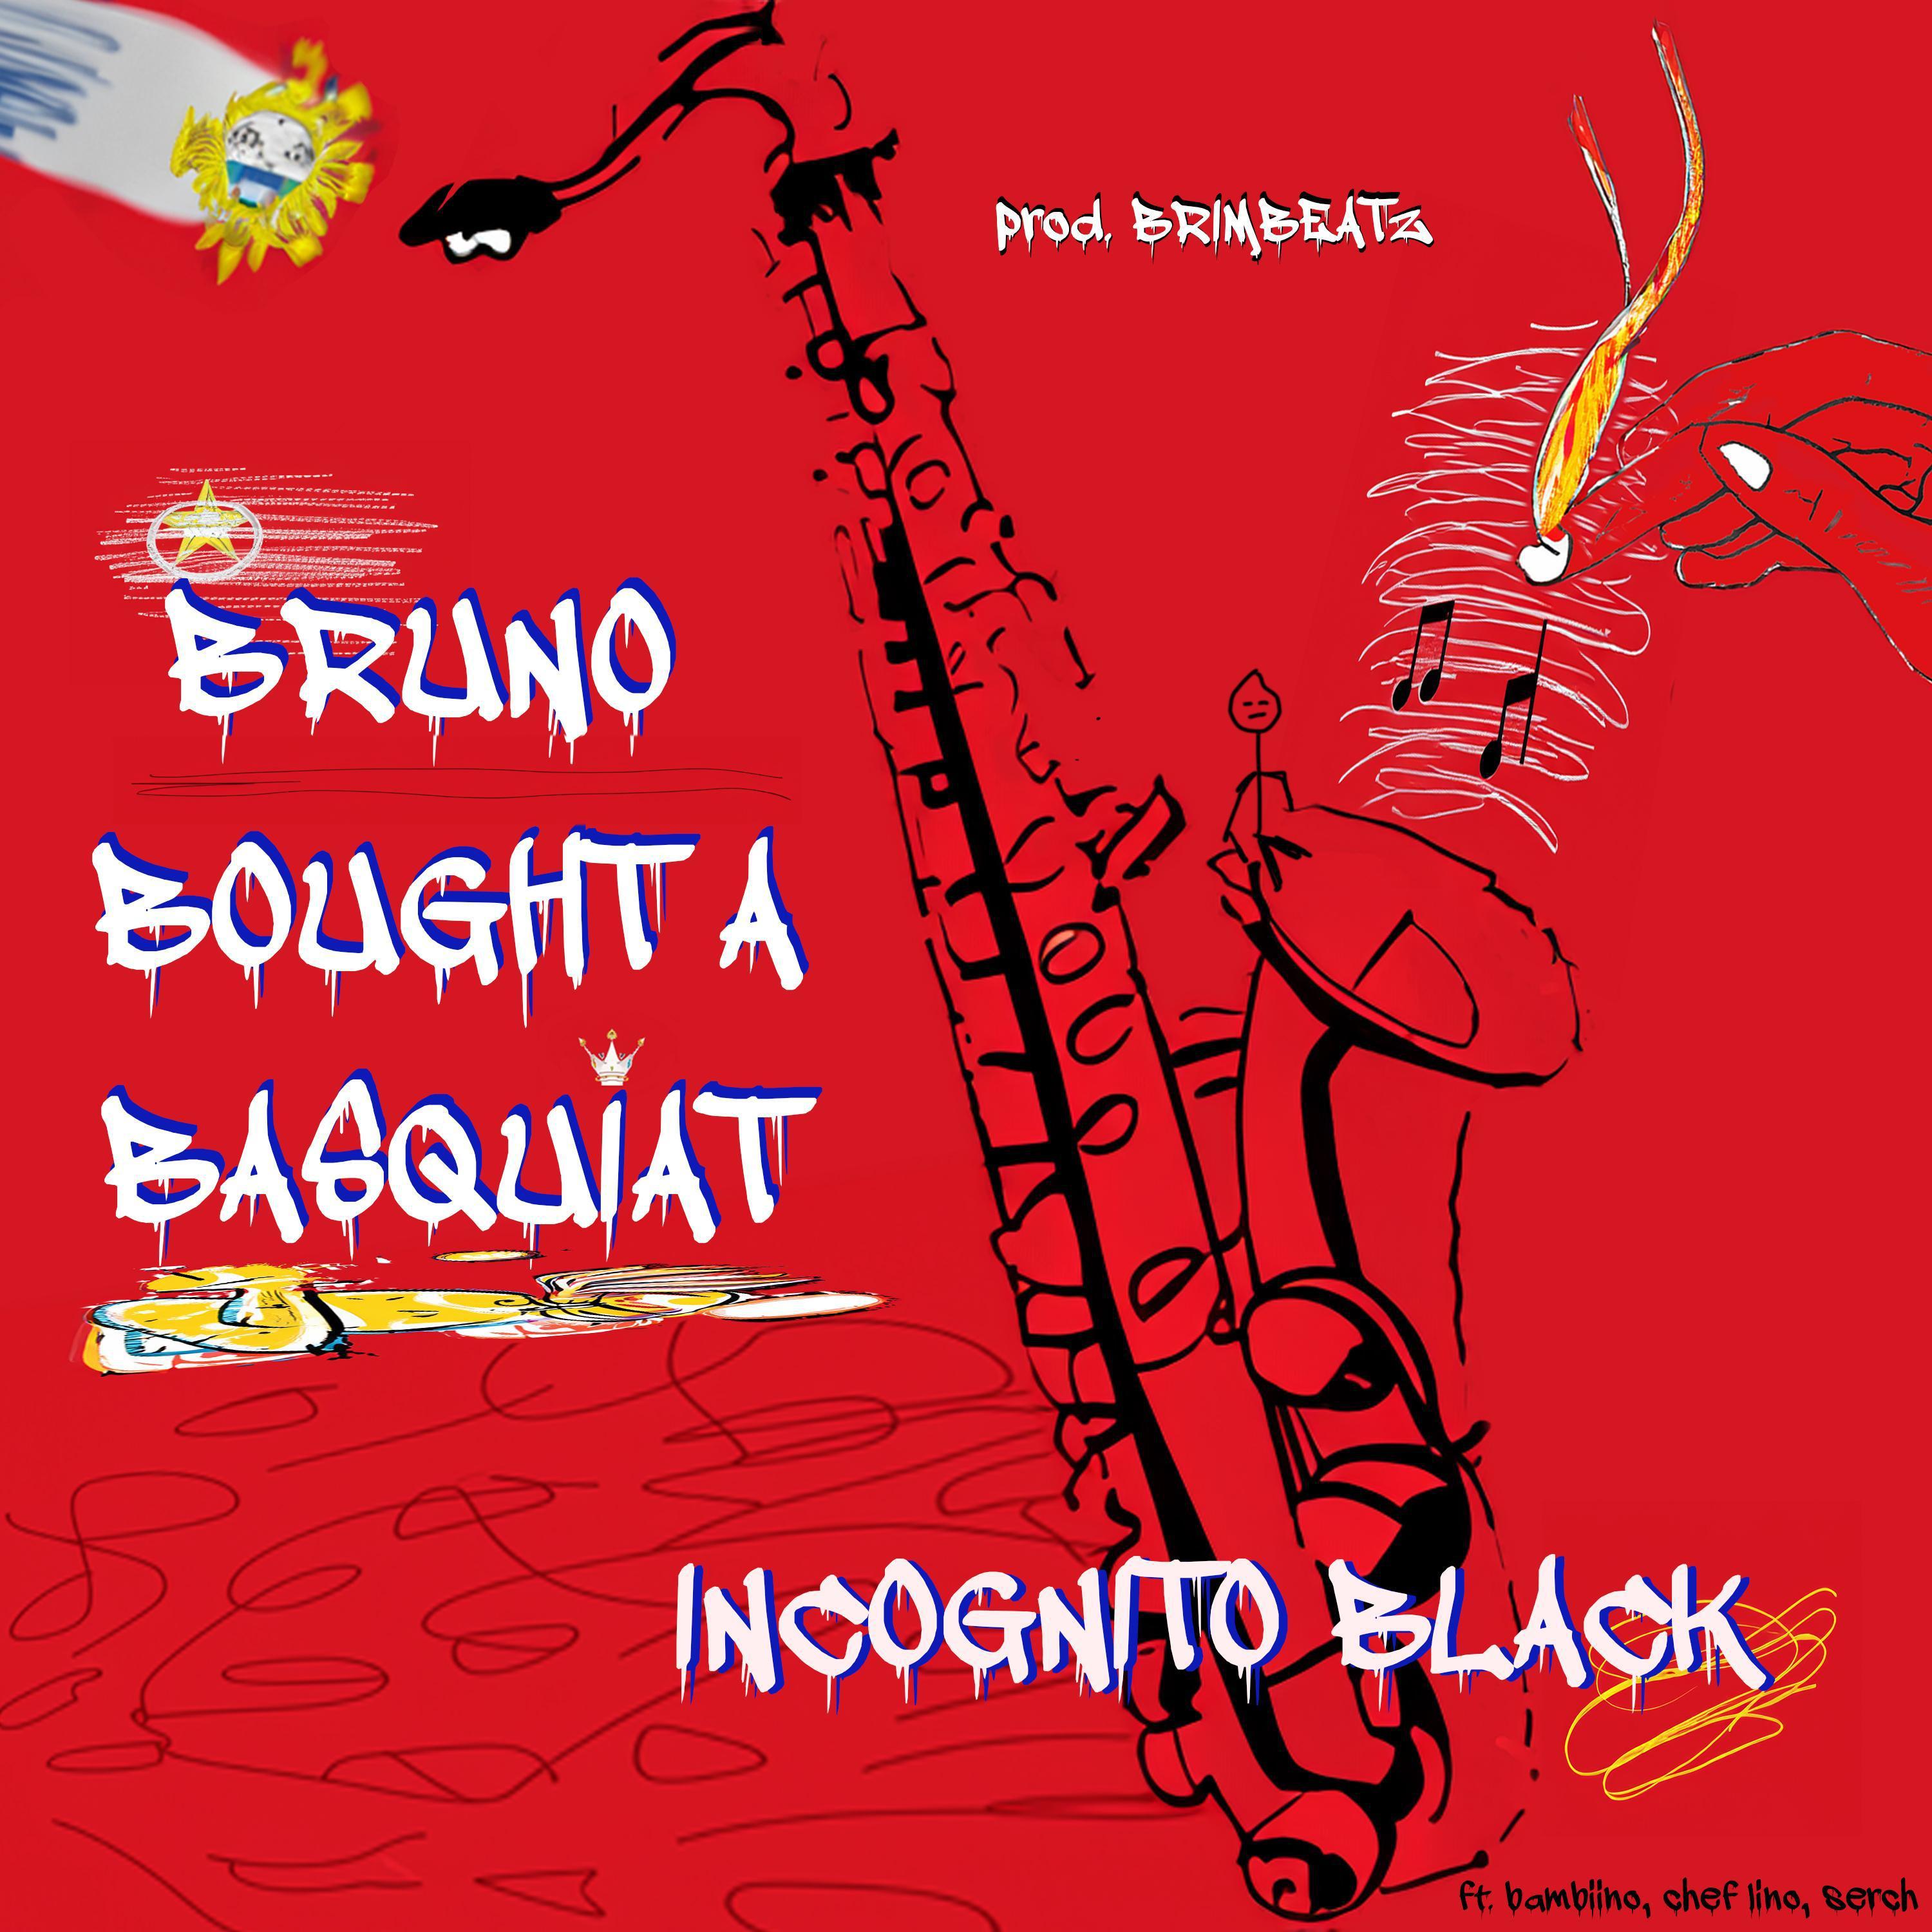 Incognito Black - Bruno Bought a Basquiat